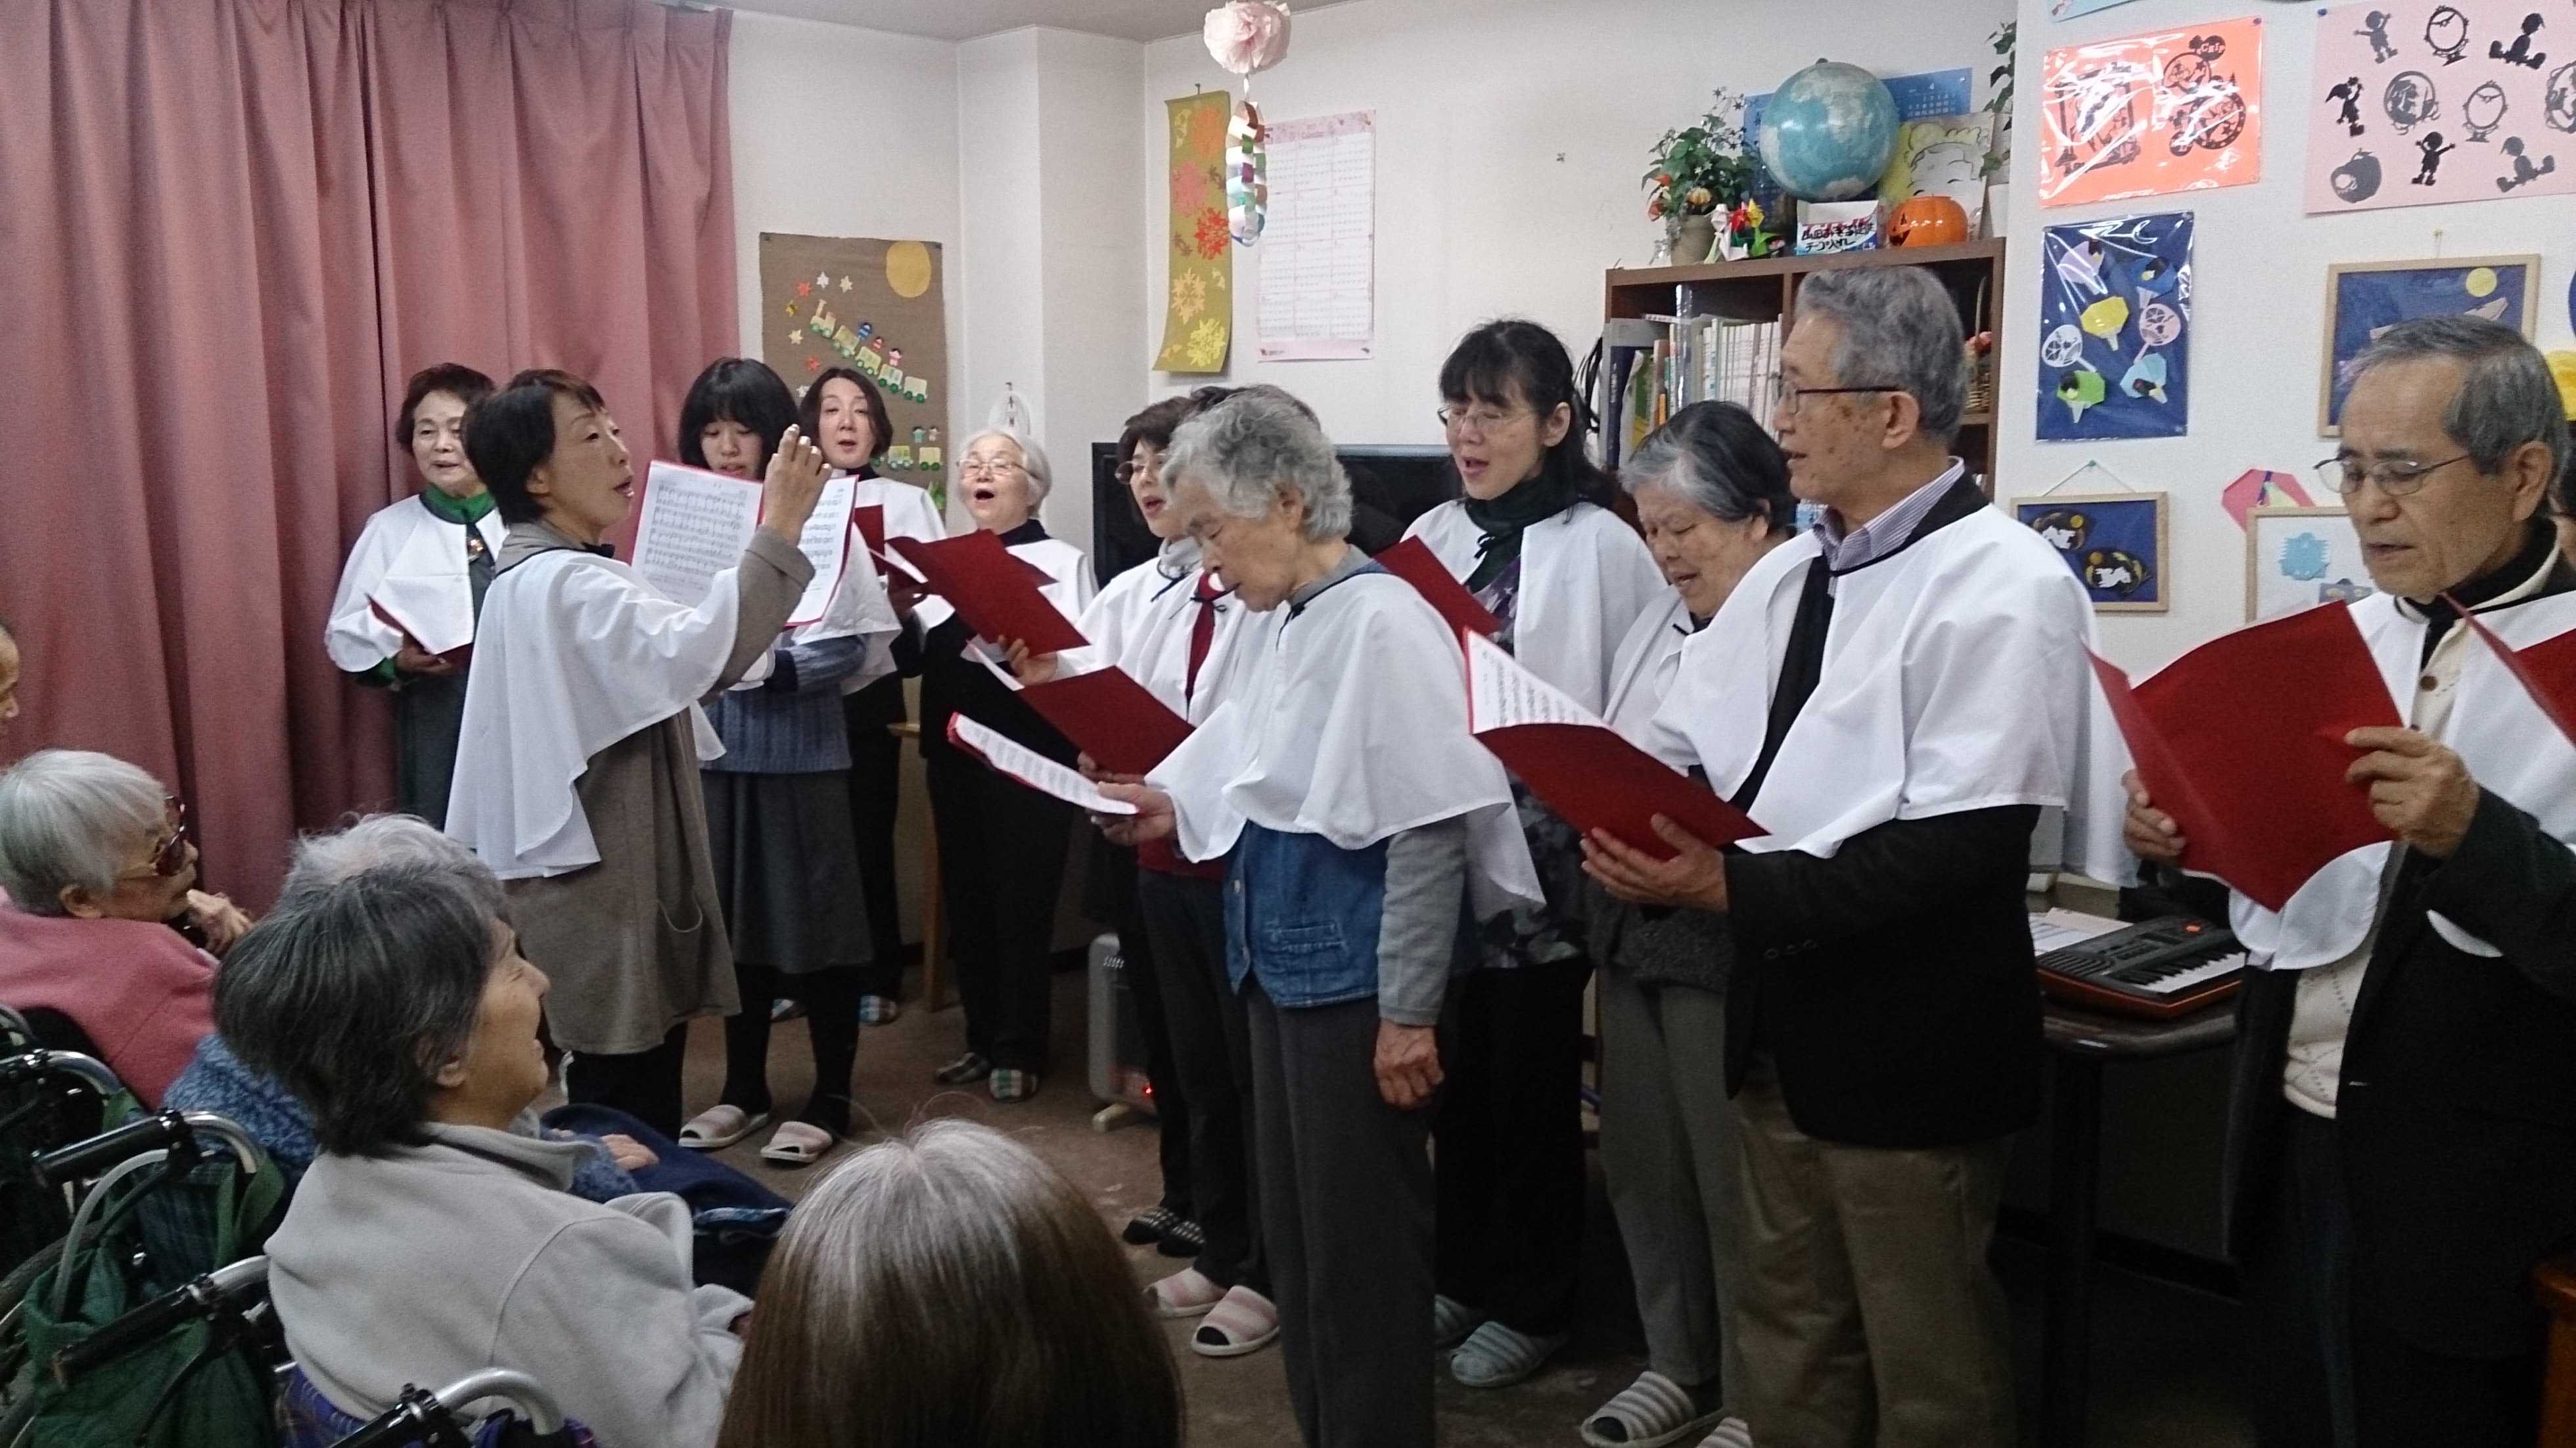 近隣の高齢者施設を訪問、讃美歌3曲を披露しクリスマスをお祝いしました。